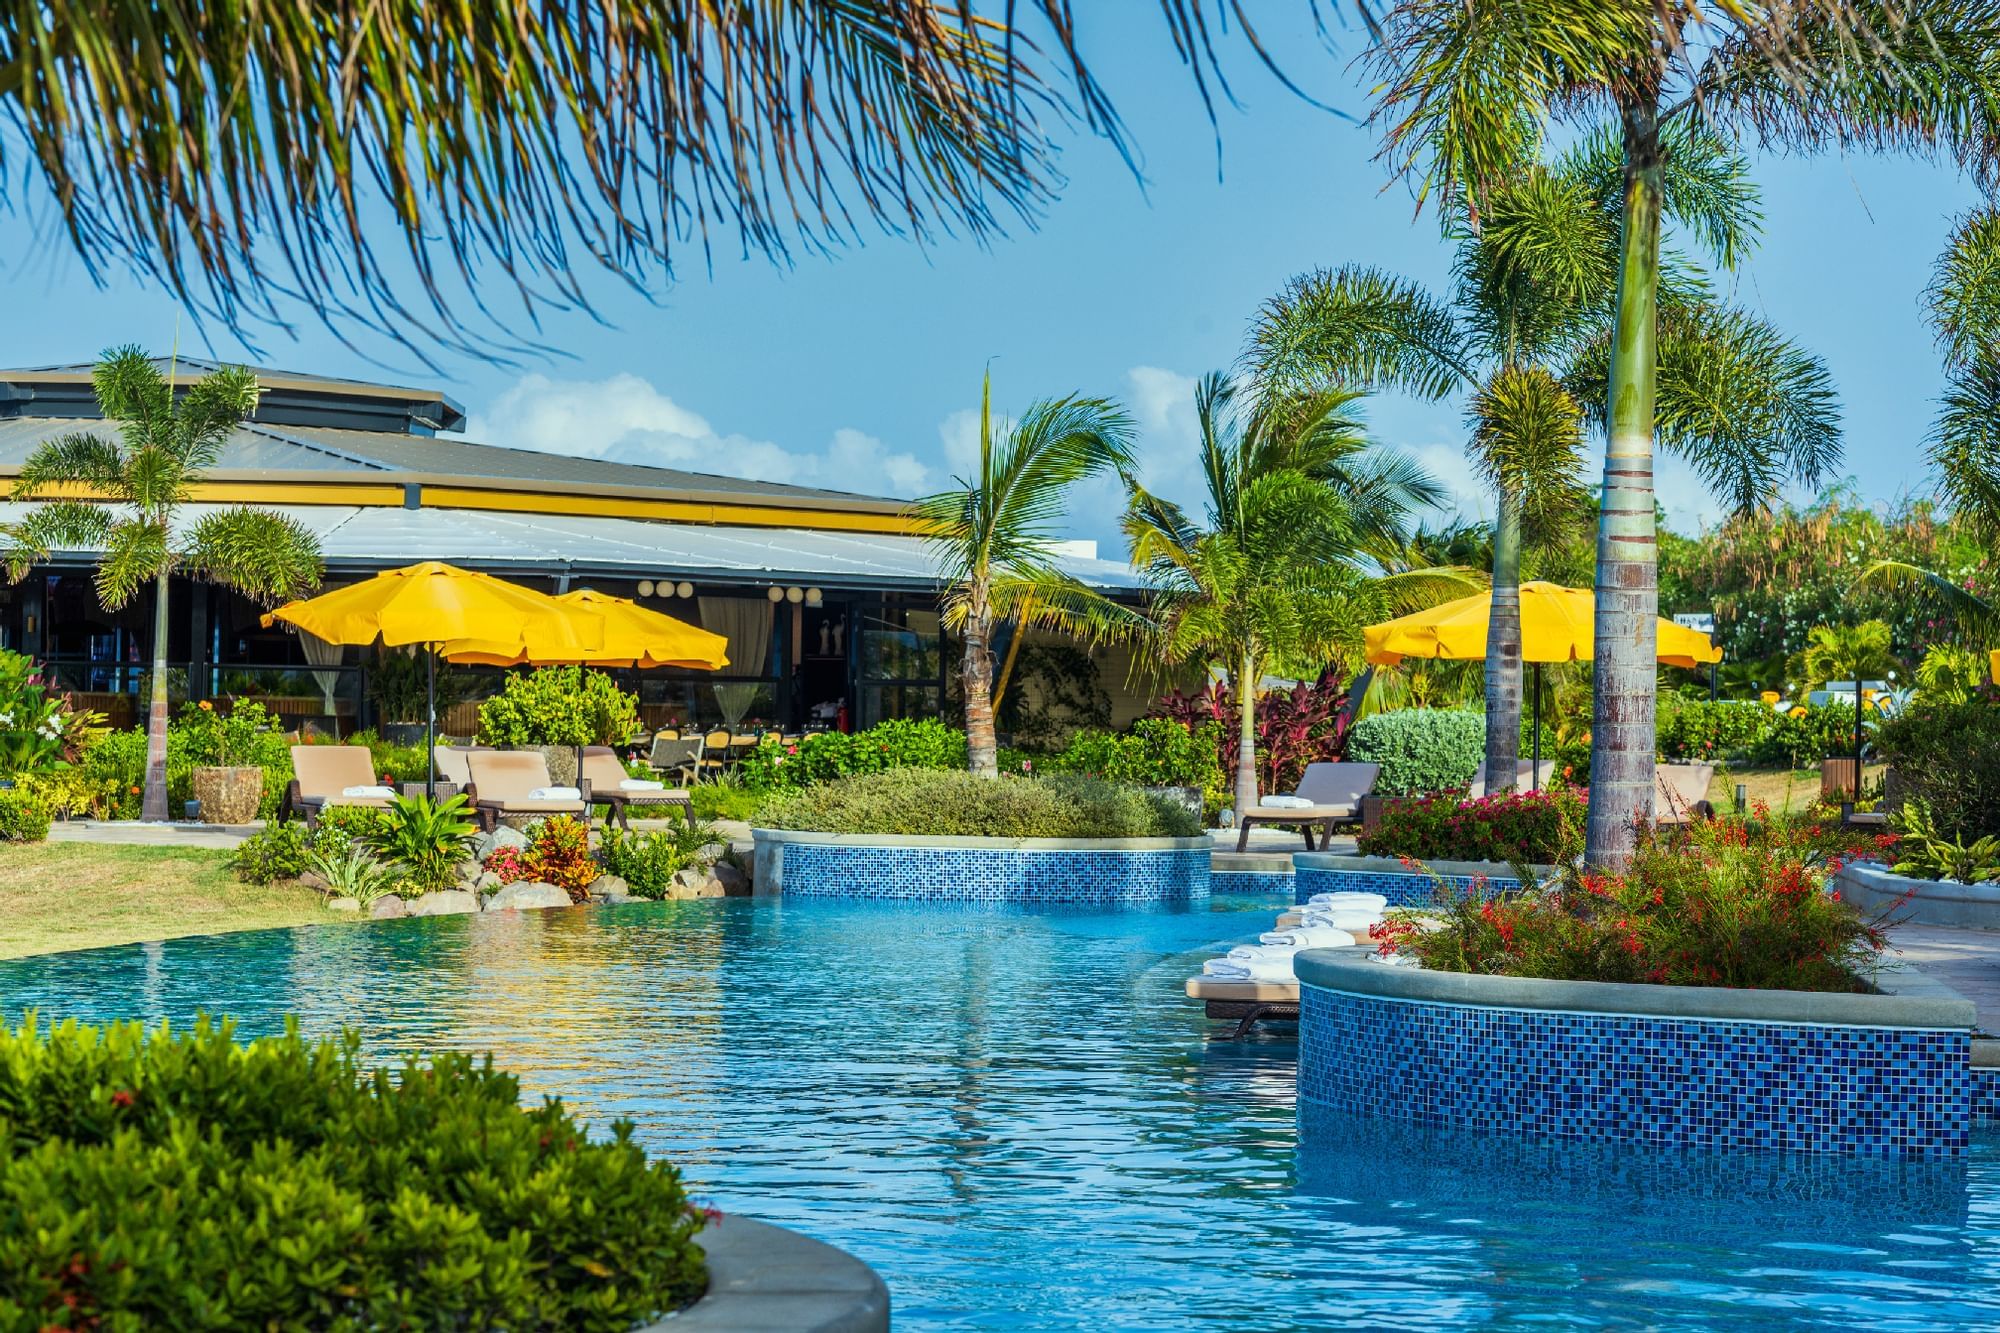 Outdoor pool in Golden Rock Resort